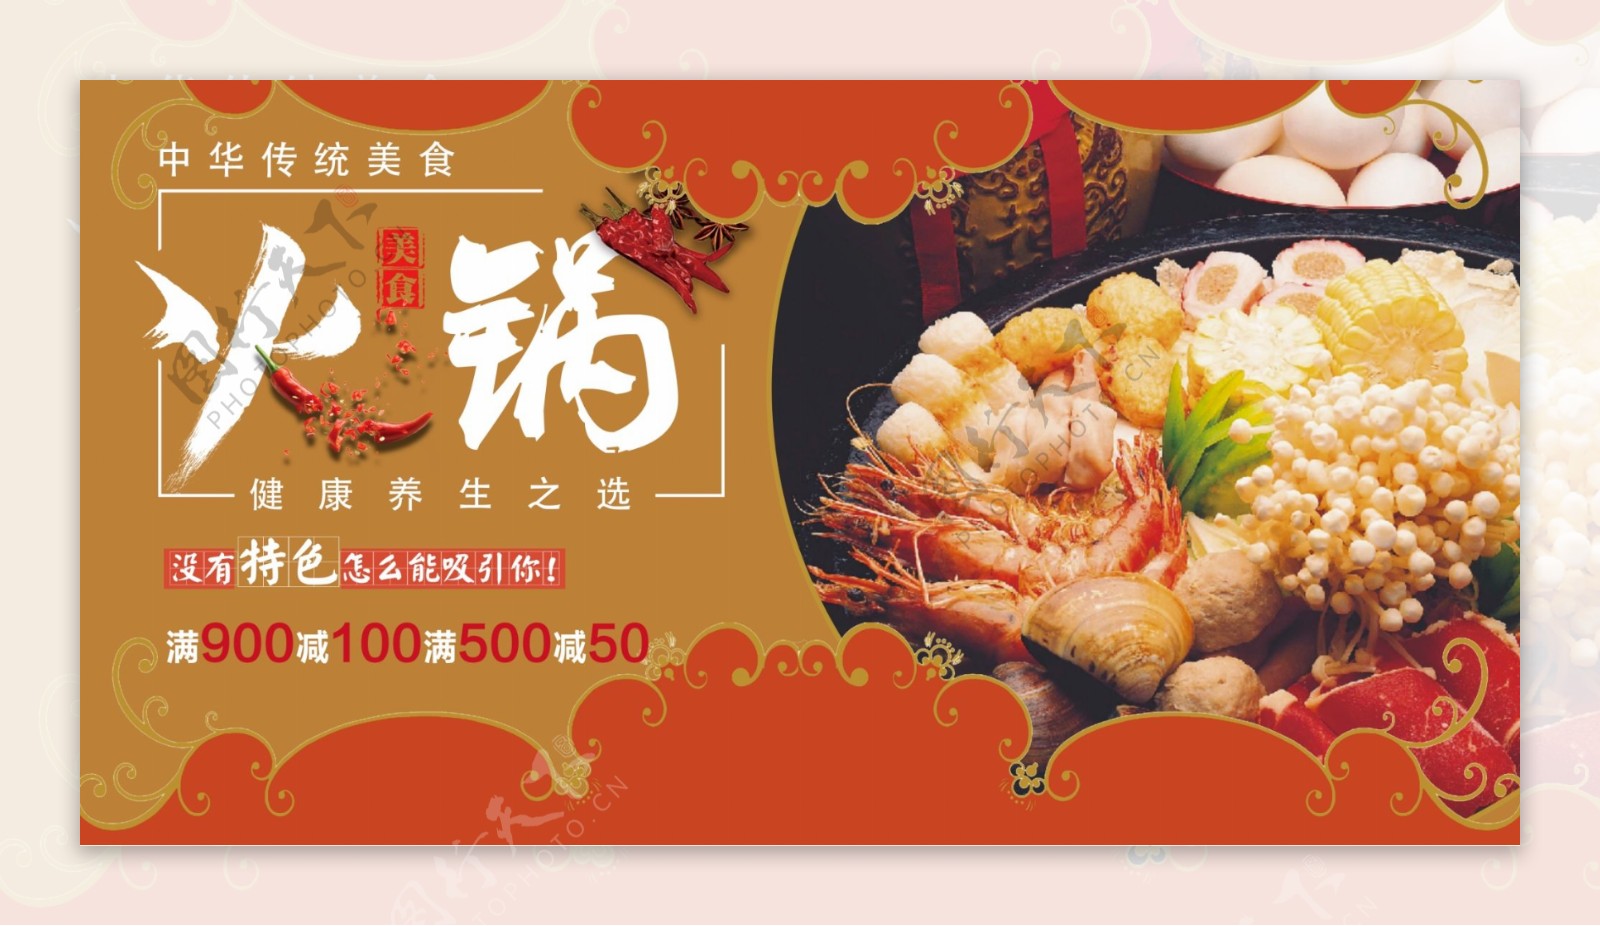 中华美食海鲜火锅新鲜美味促销活动